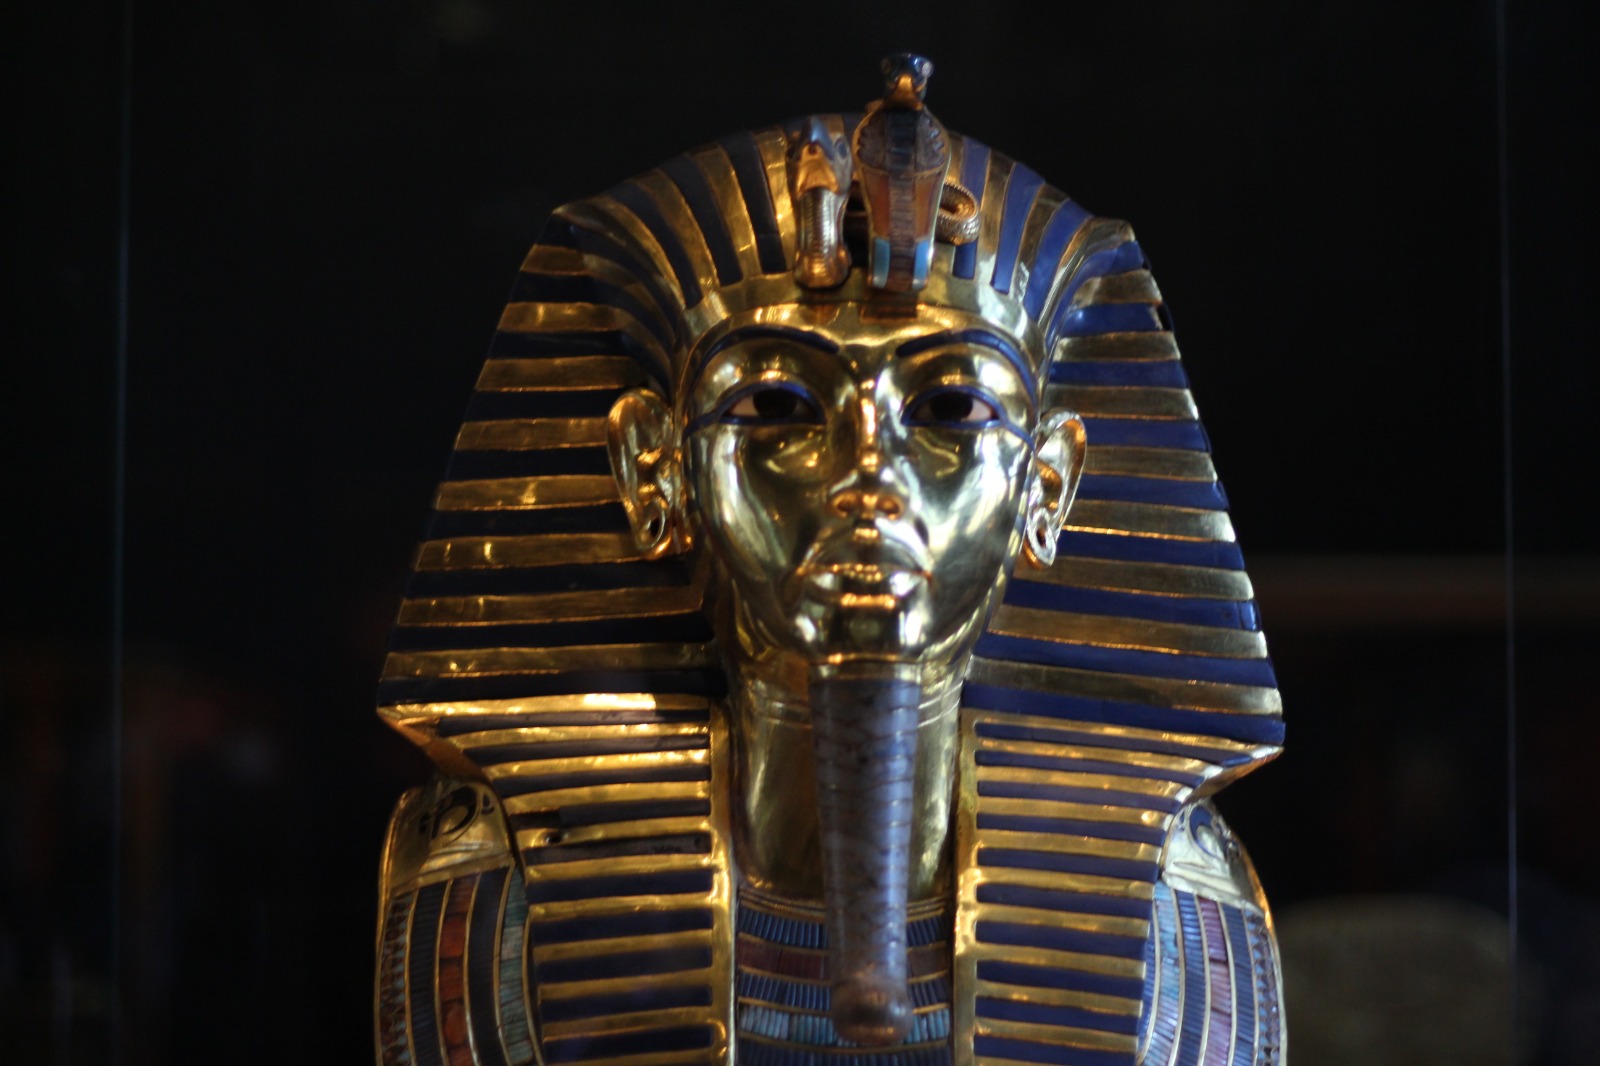 تمثال توت عنخ آمون أحد فراعنة الأسرة الثامنة عشر في تاريخ مصر القديم - الشرق